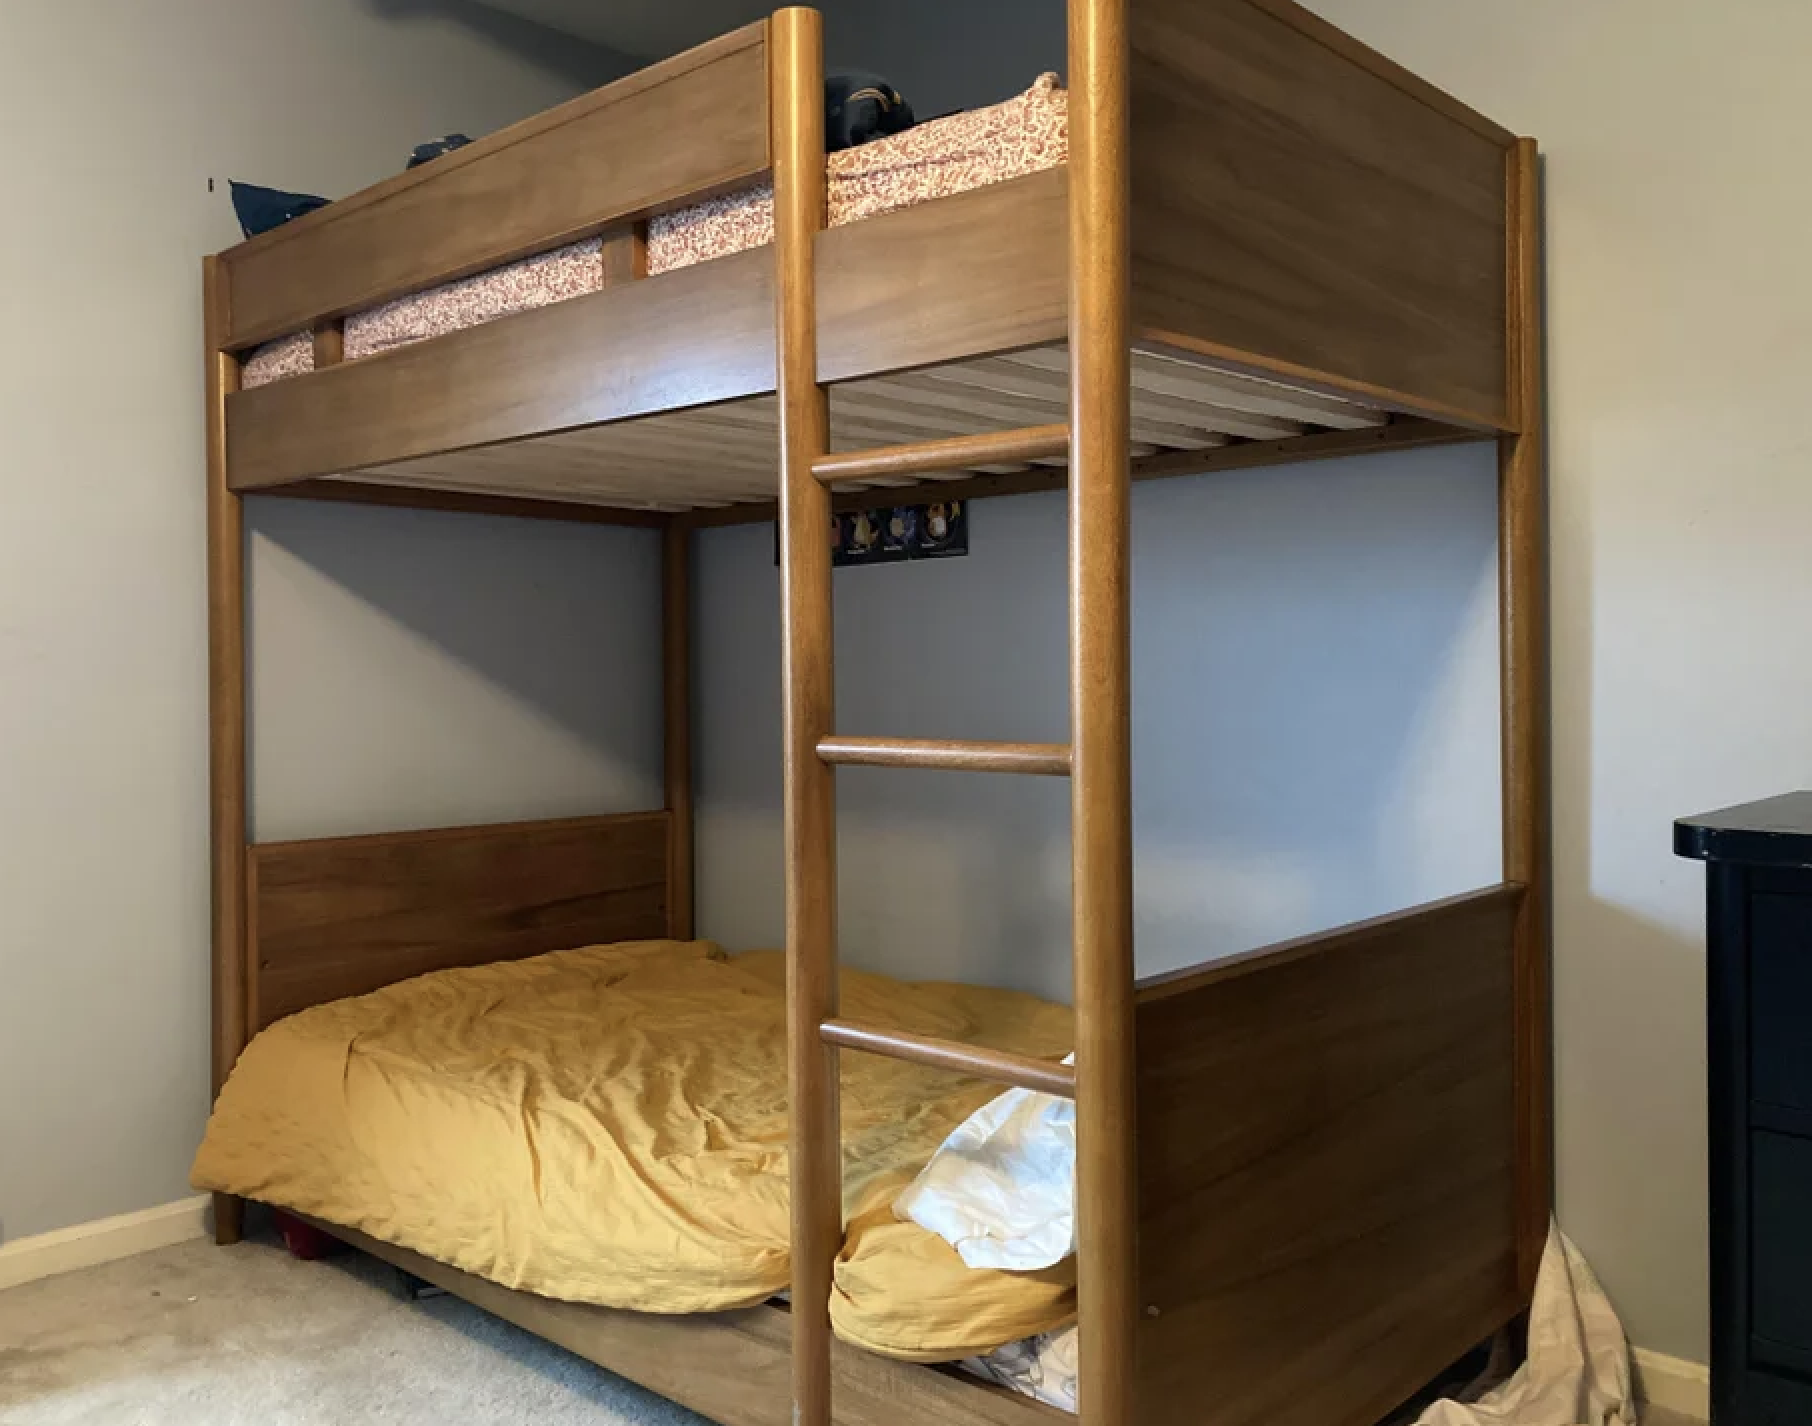 A bunkbed